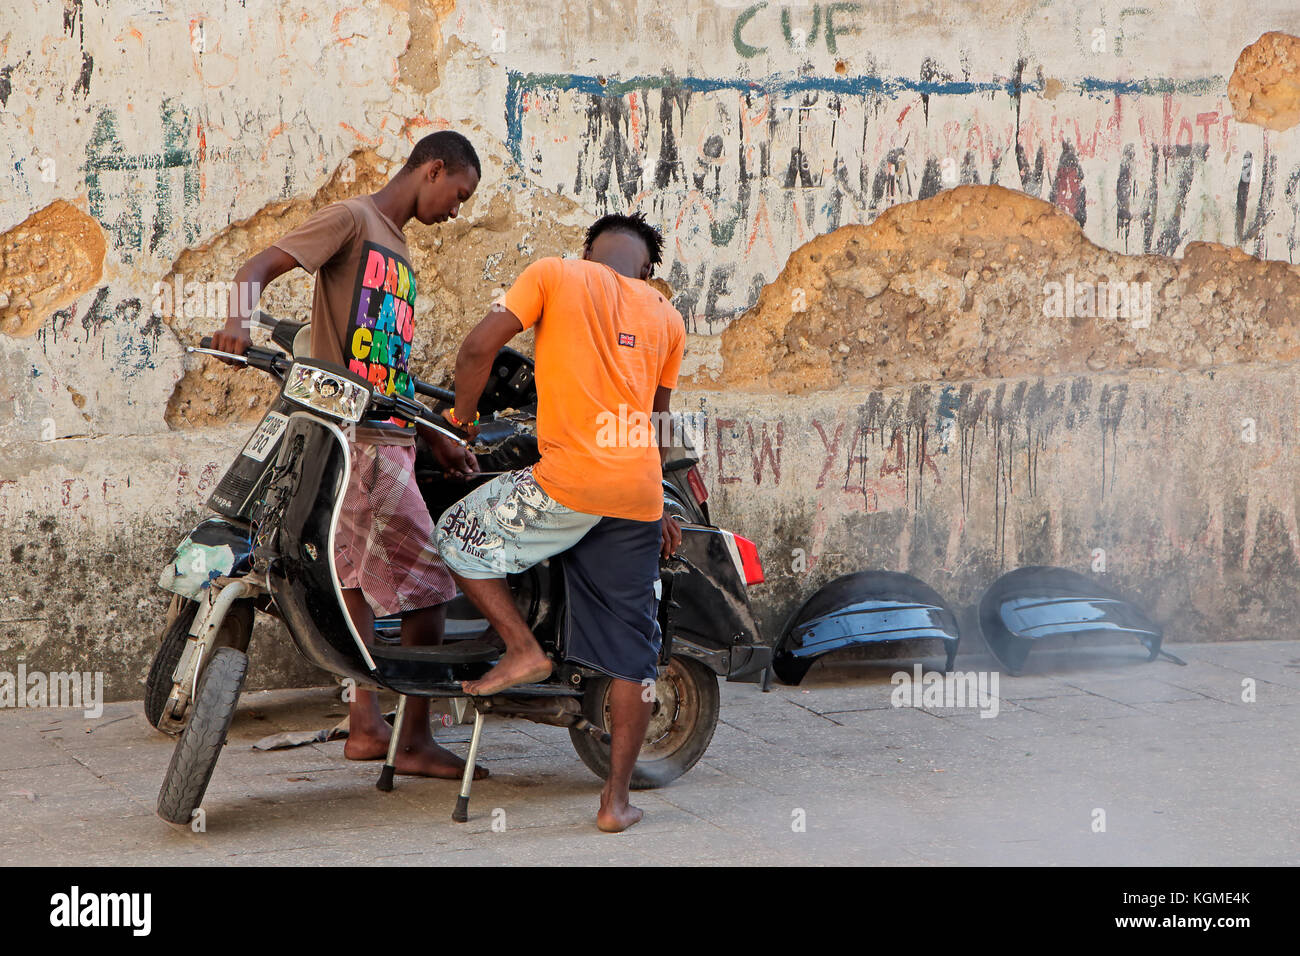 Stone Town zanzibar, Tanzania - ottobre 29, 2014: Uomini non identificati lavorando su uno scooter (moto) in uno stretto vicolo della storica città di pietra Foto Stock